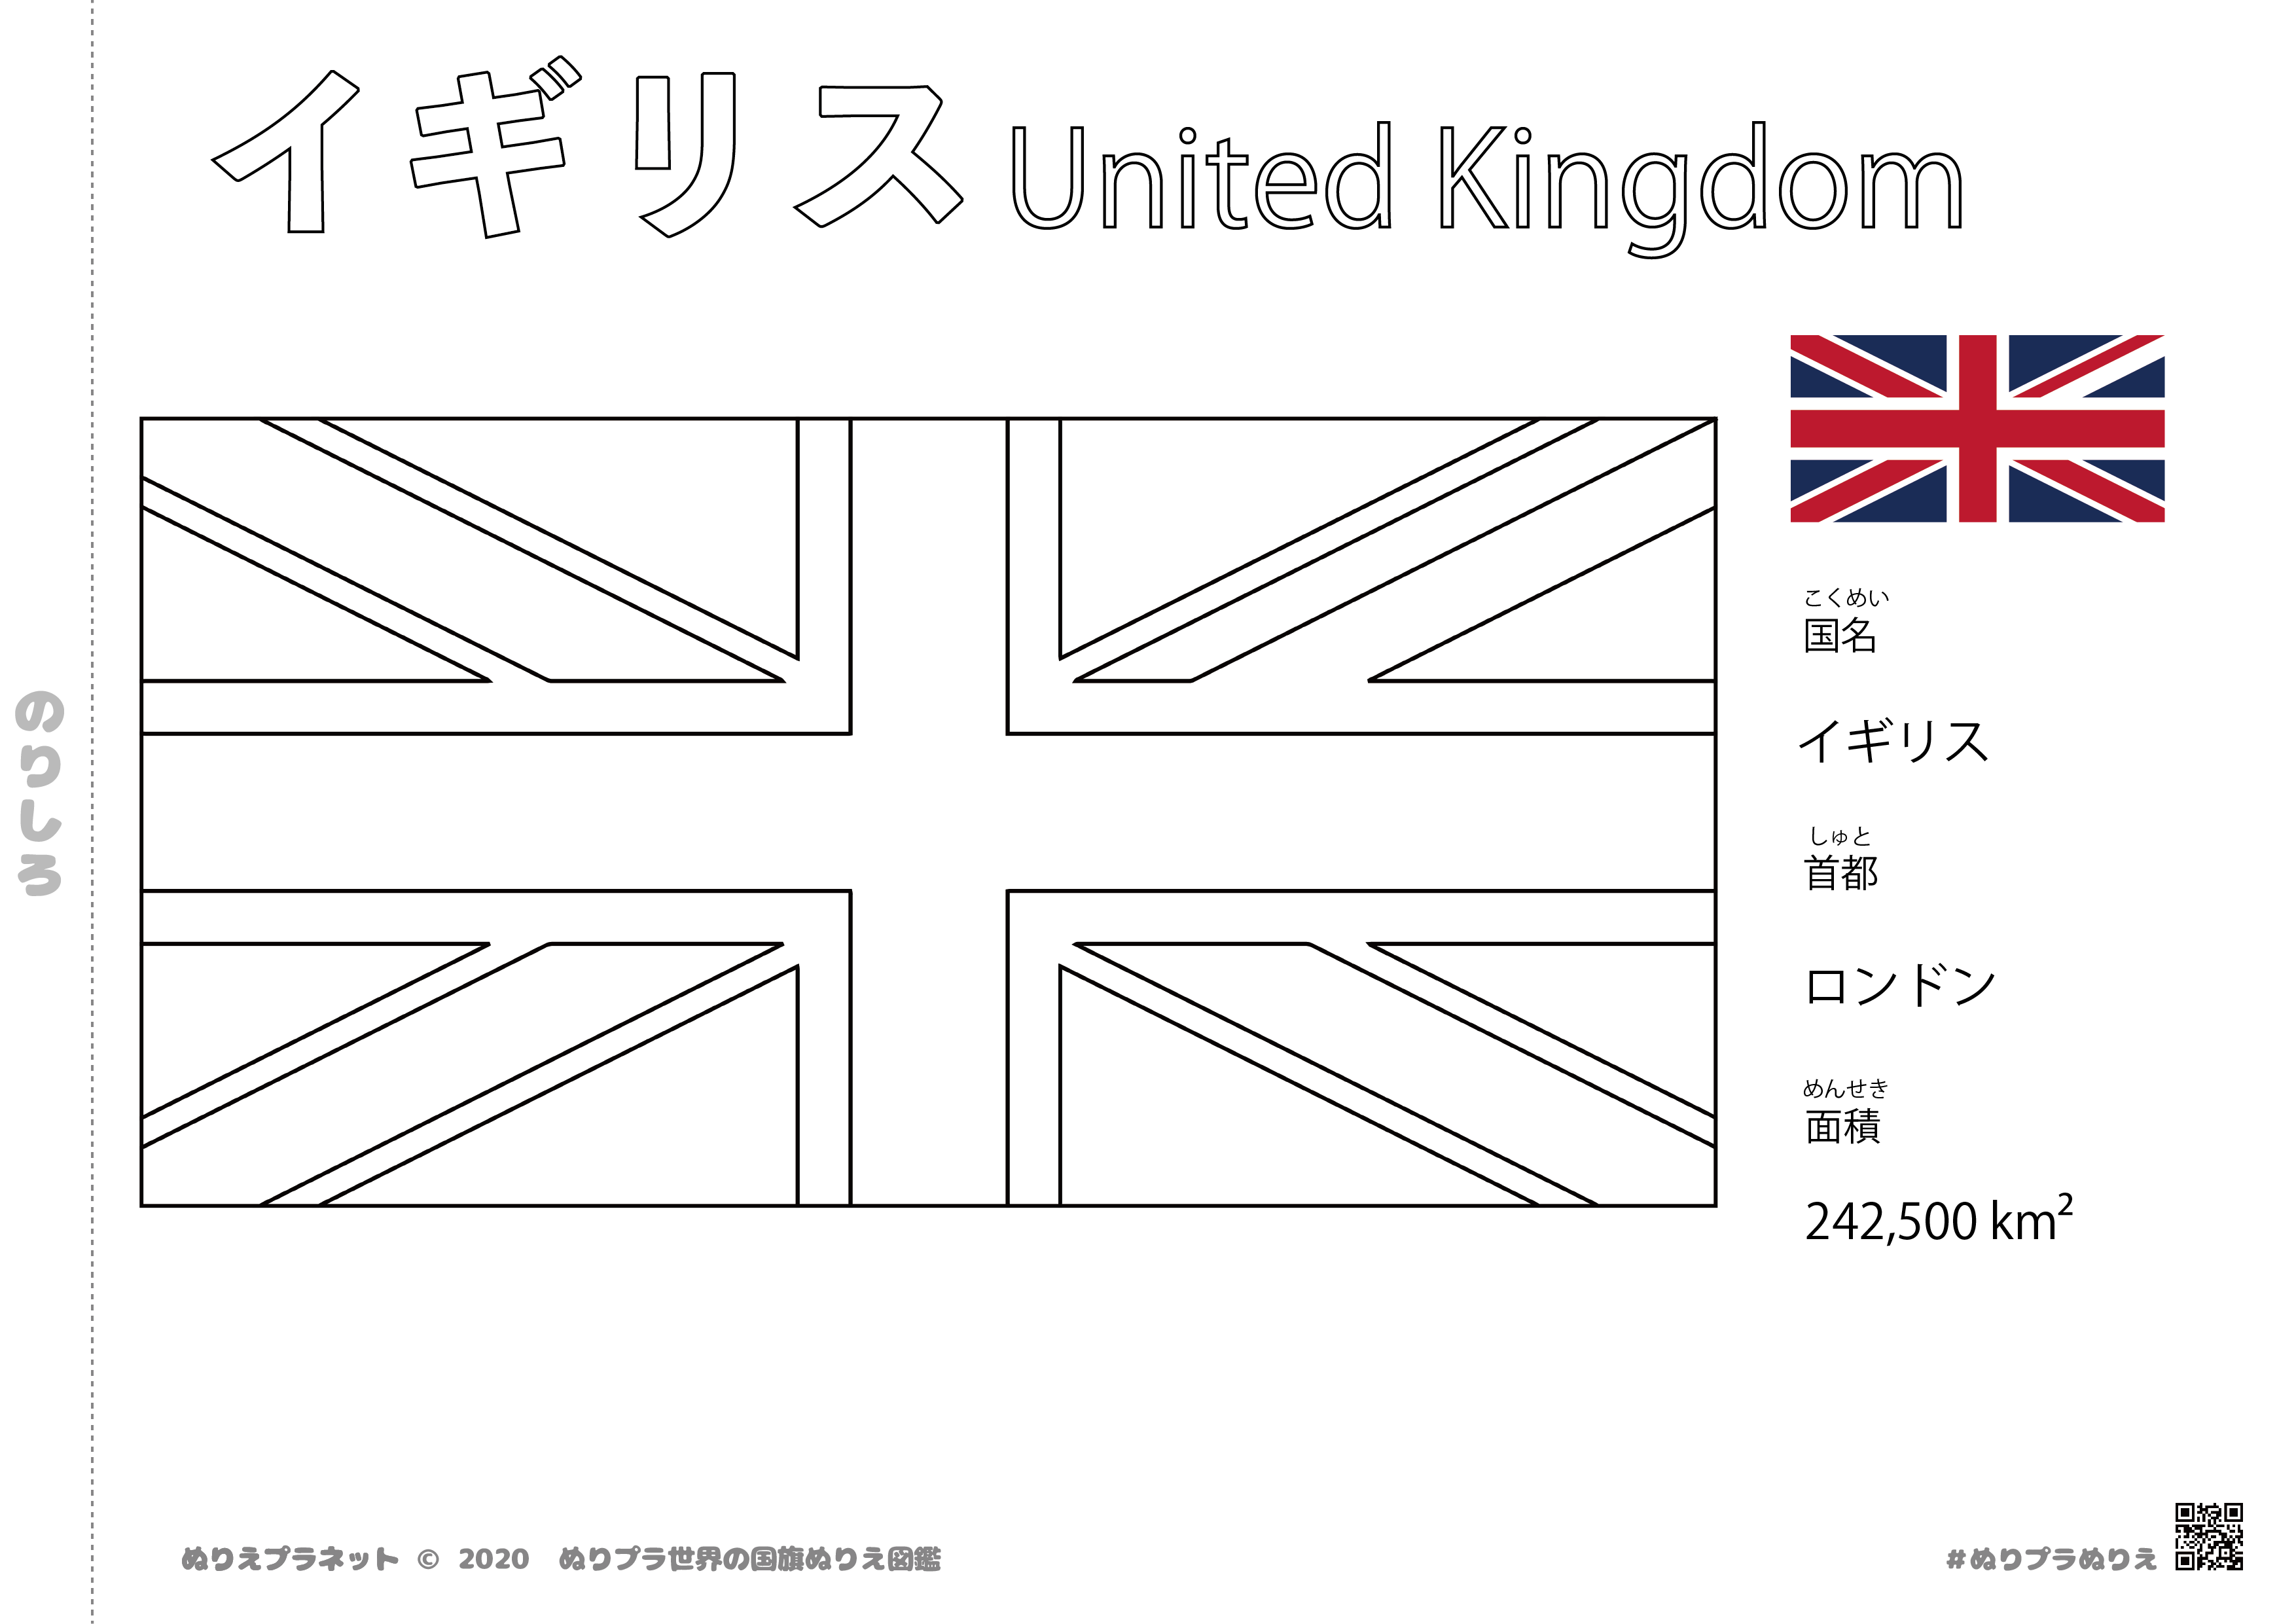 イギリスの国旗塗り絵です。国名、首都、面積も覚えられます。